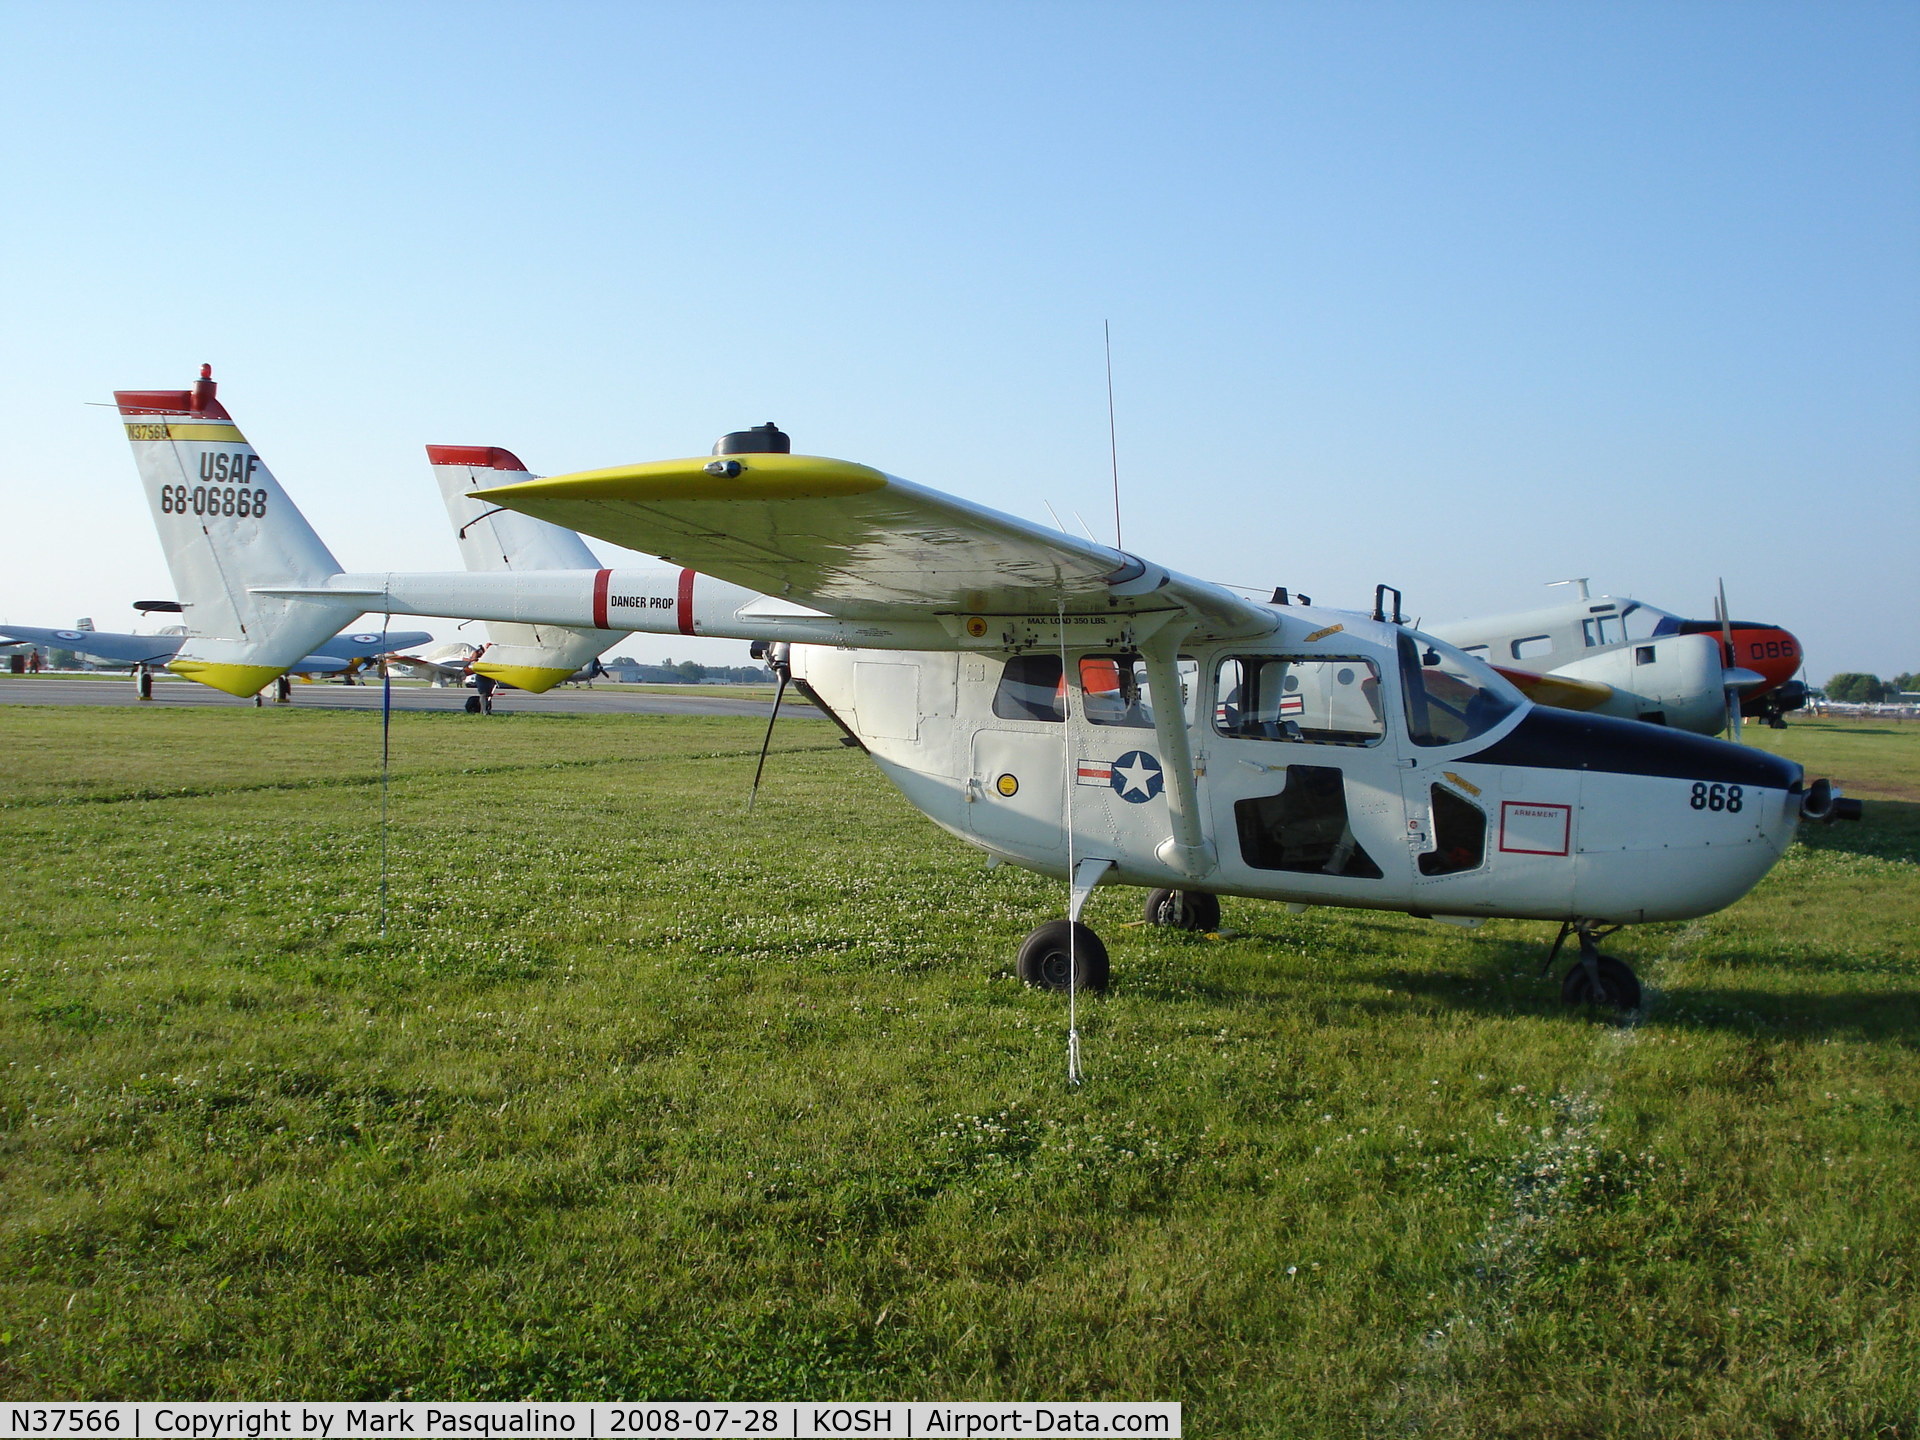 N37566, 1967 Cessna M337B (O-2A) Super Skymaster C/N 337M-0157 (68-6868), Cessna O-2A